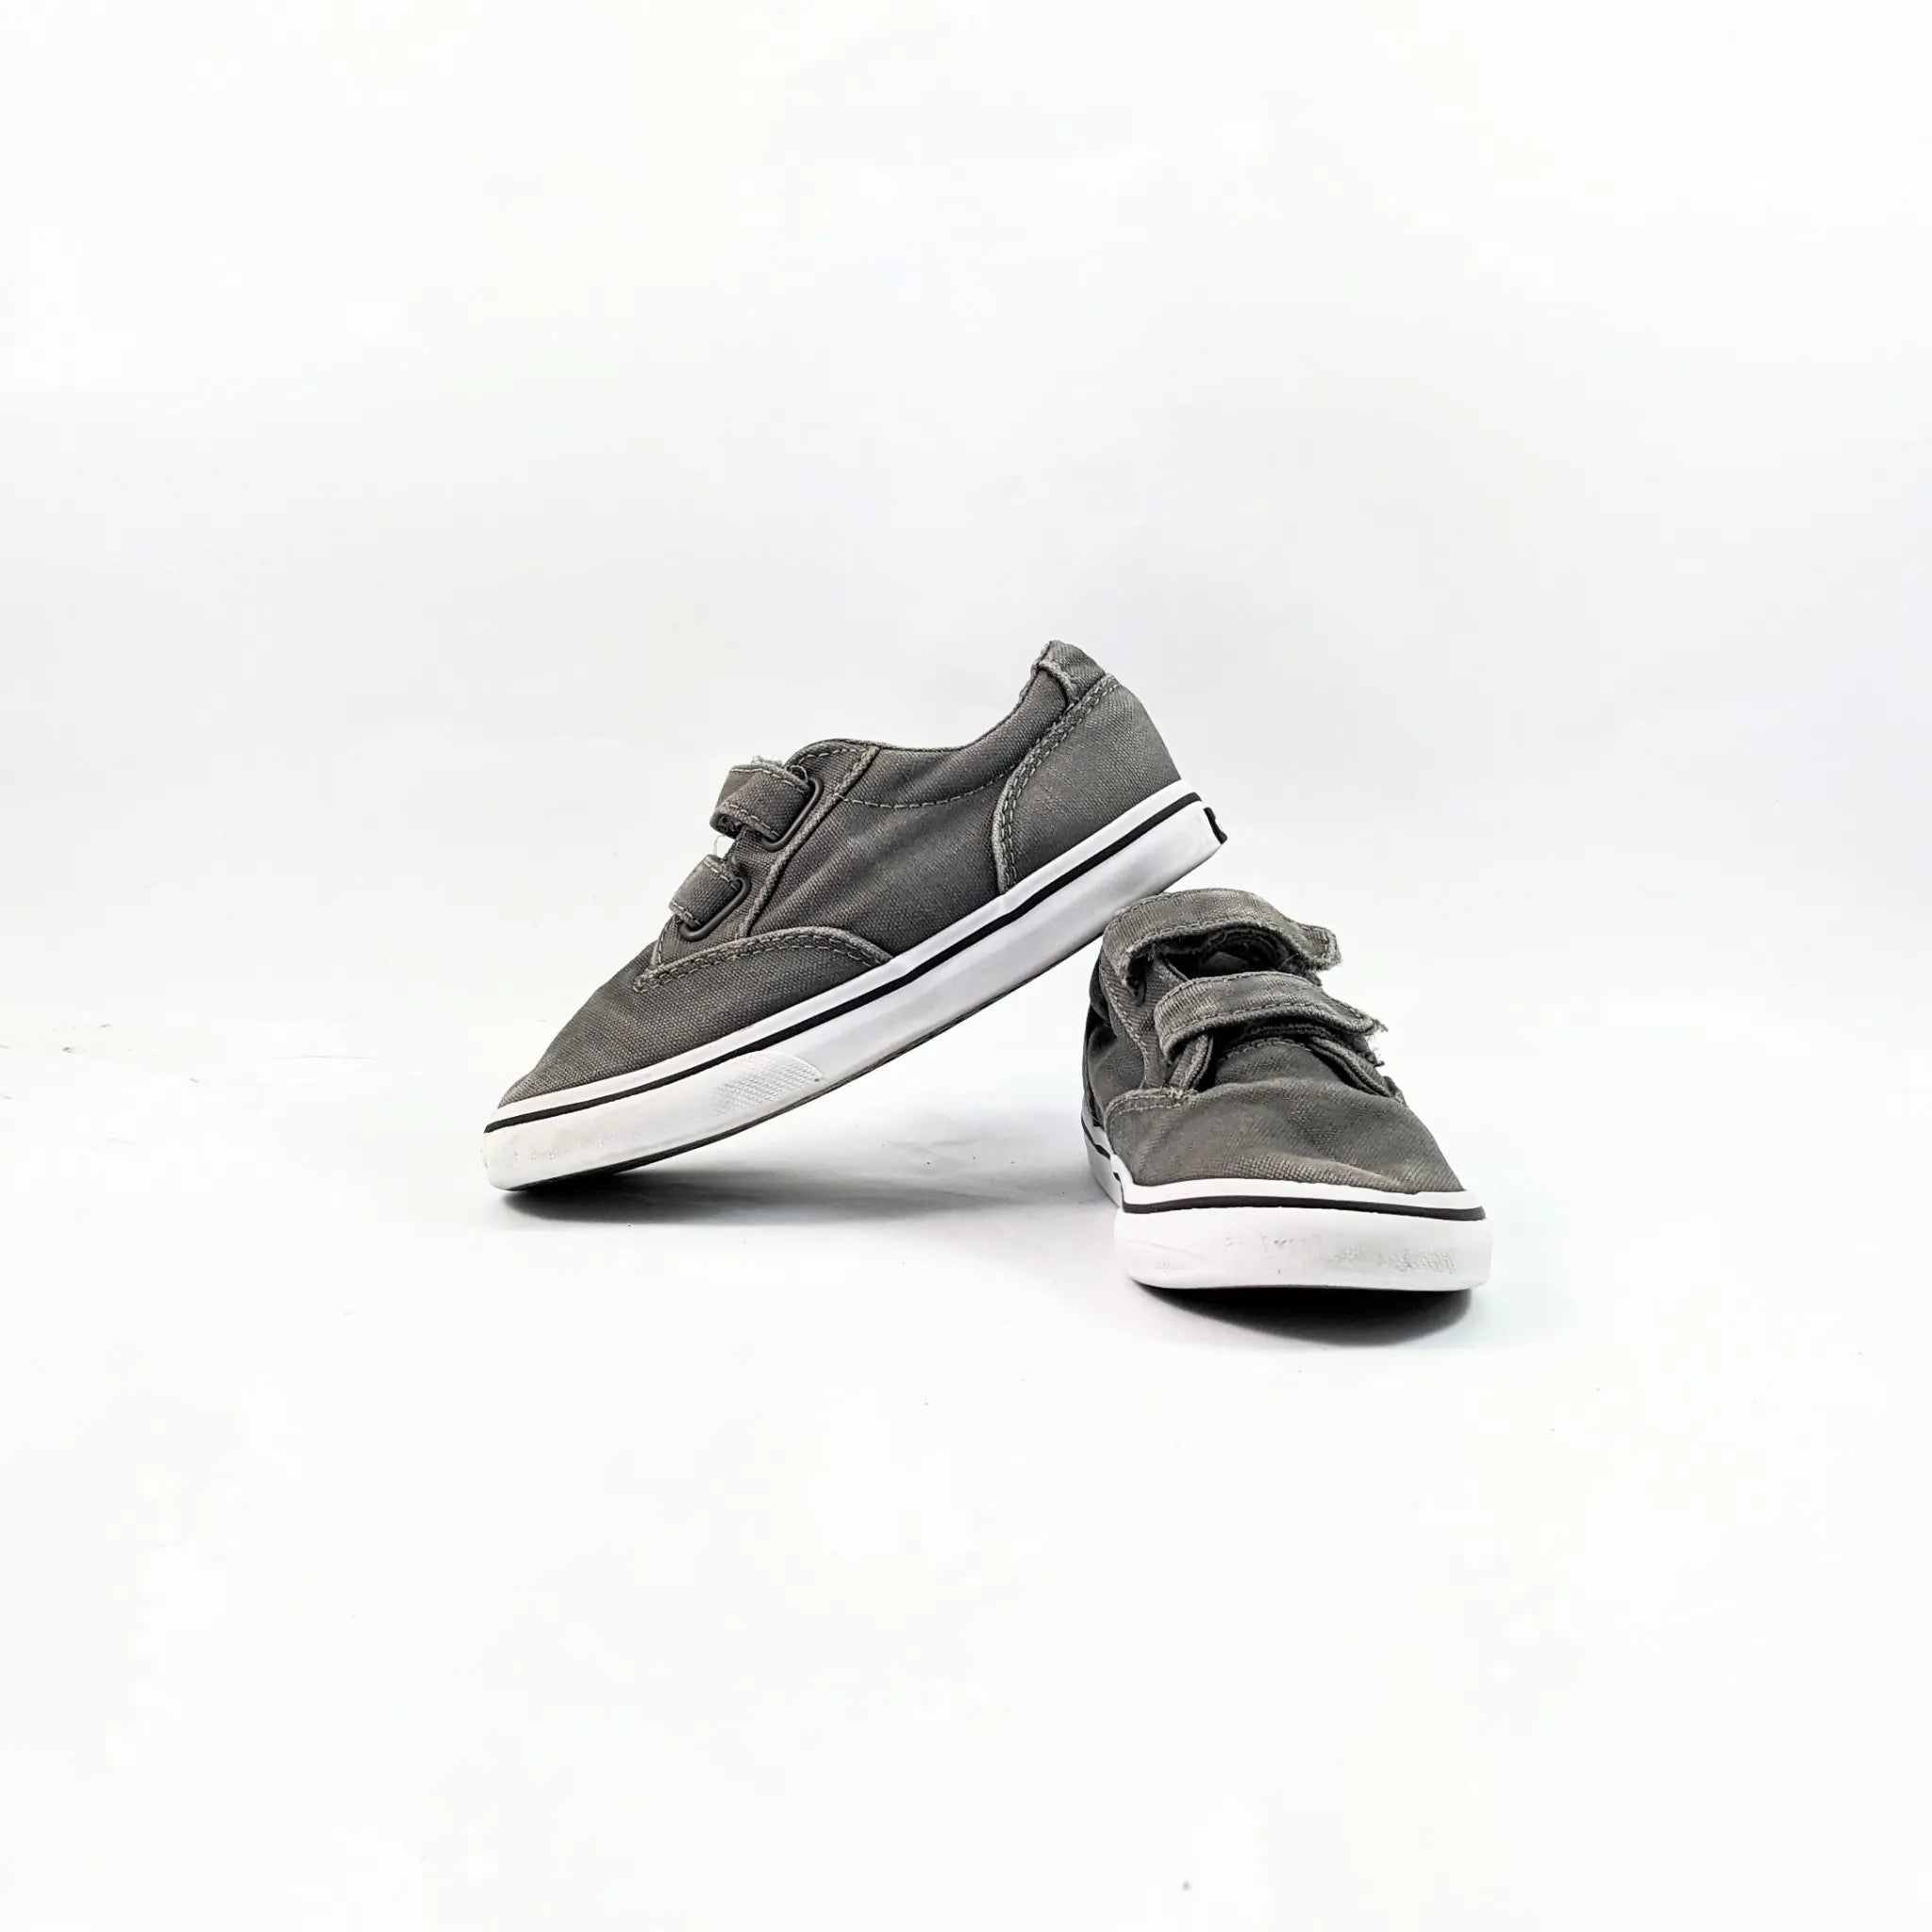 Vans Grey Sneakers Kids